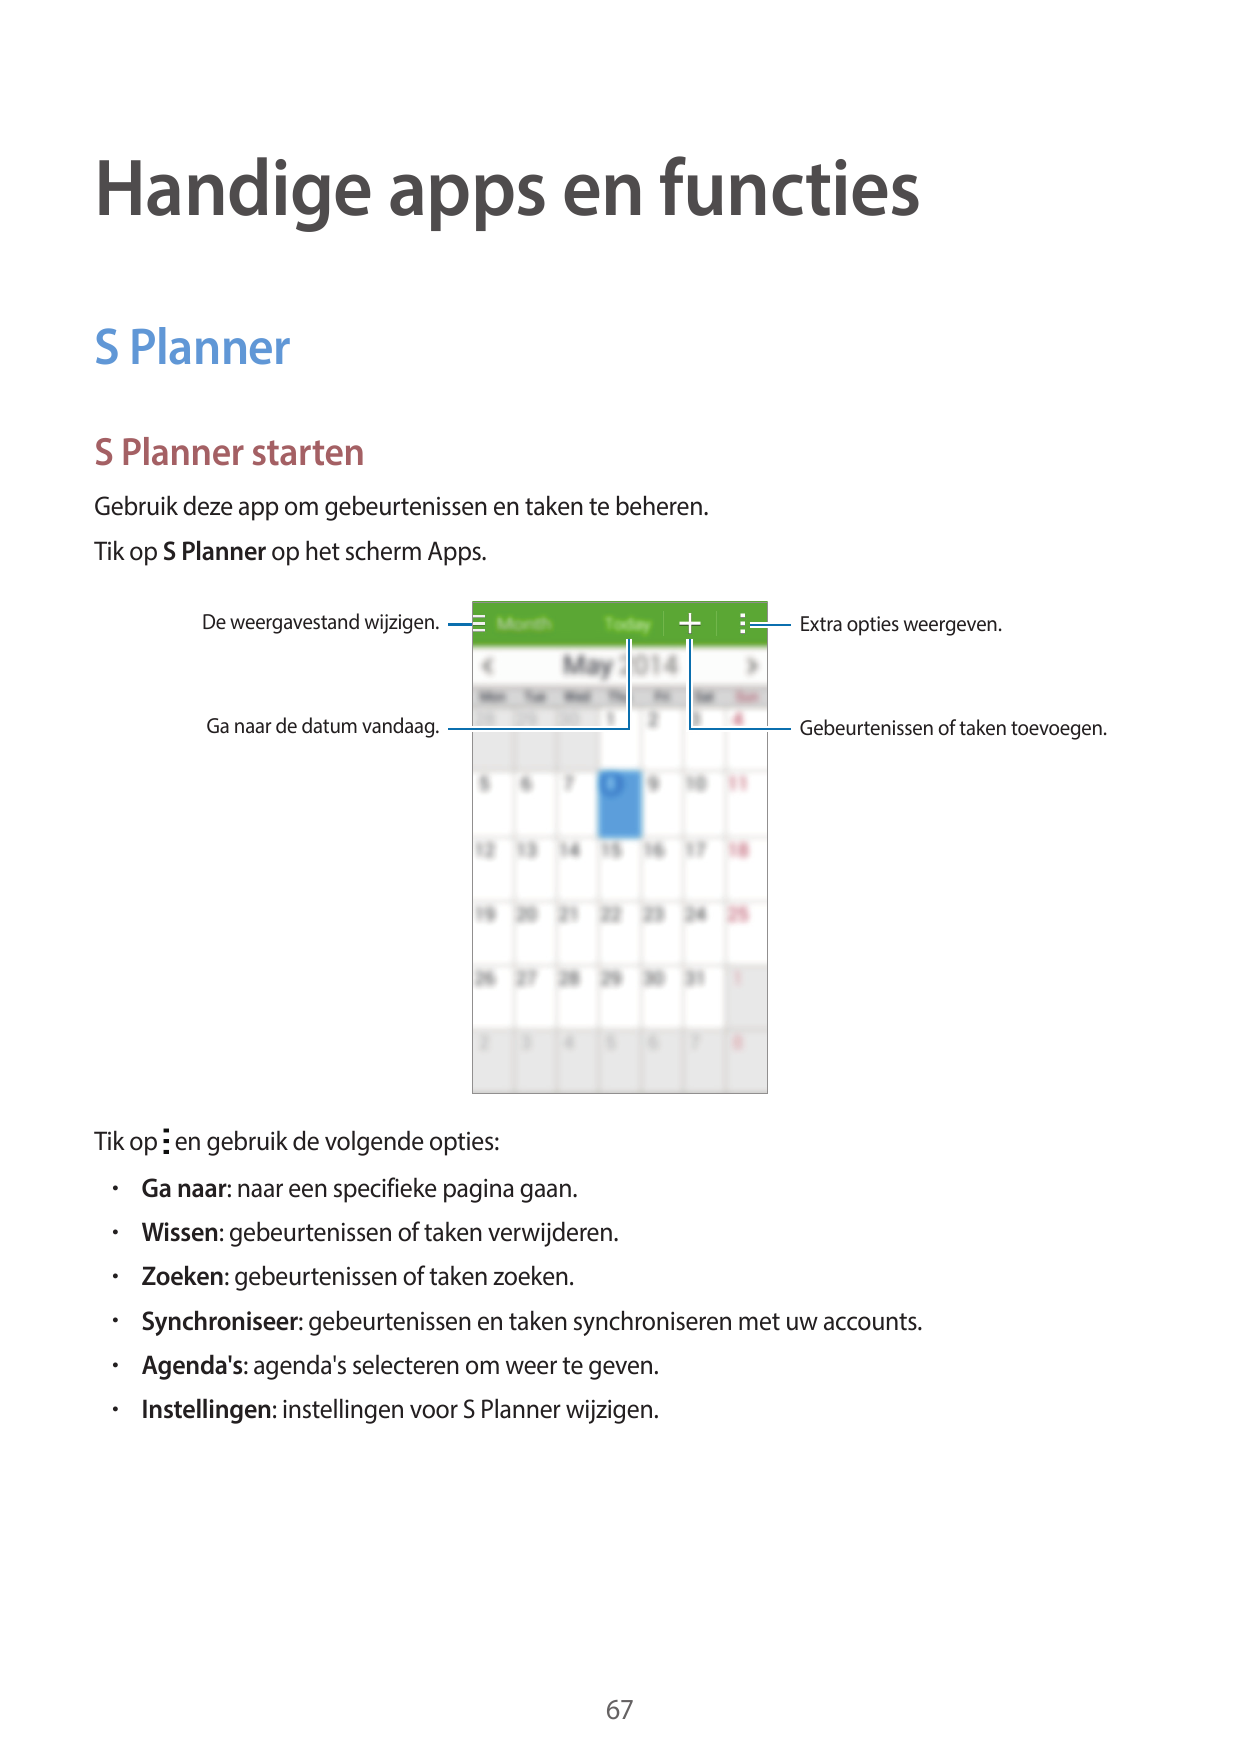 Handige apps en functiesS PlannerS Planner startenGebruik deze app om gebeurtenissen en taken te beheren.Tik op S Planner op het